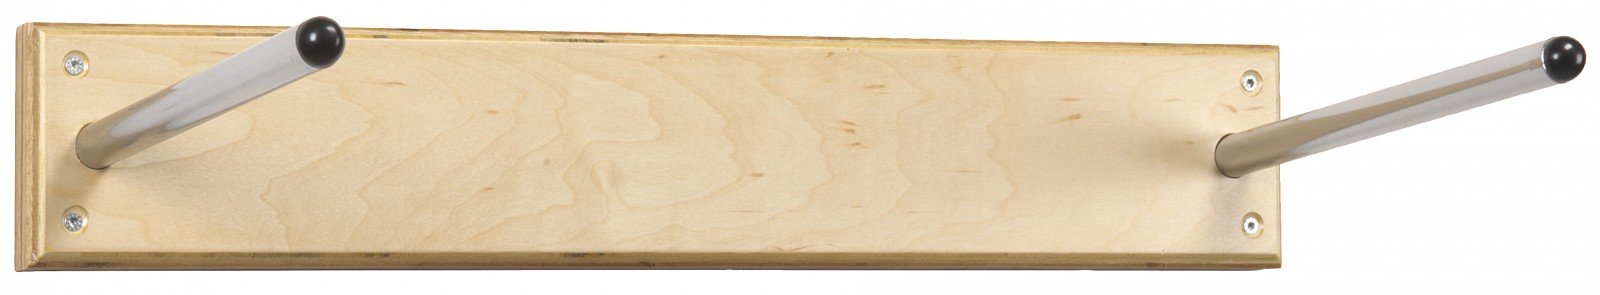 Trendy Sport Wandaufhängung, Mattenaufhänger aus Holz für ProfiGymMat und YogaMat